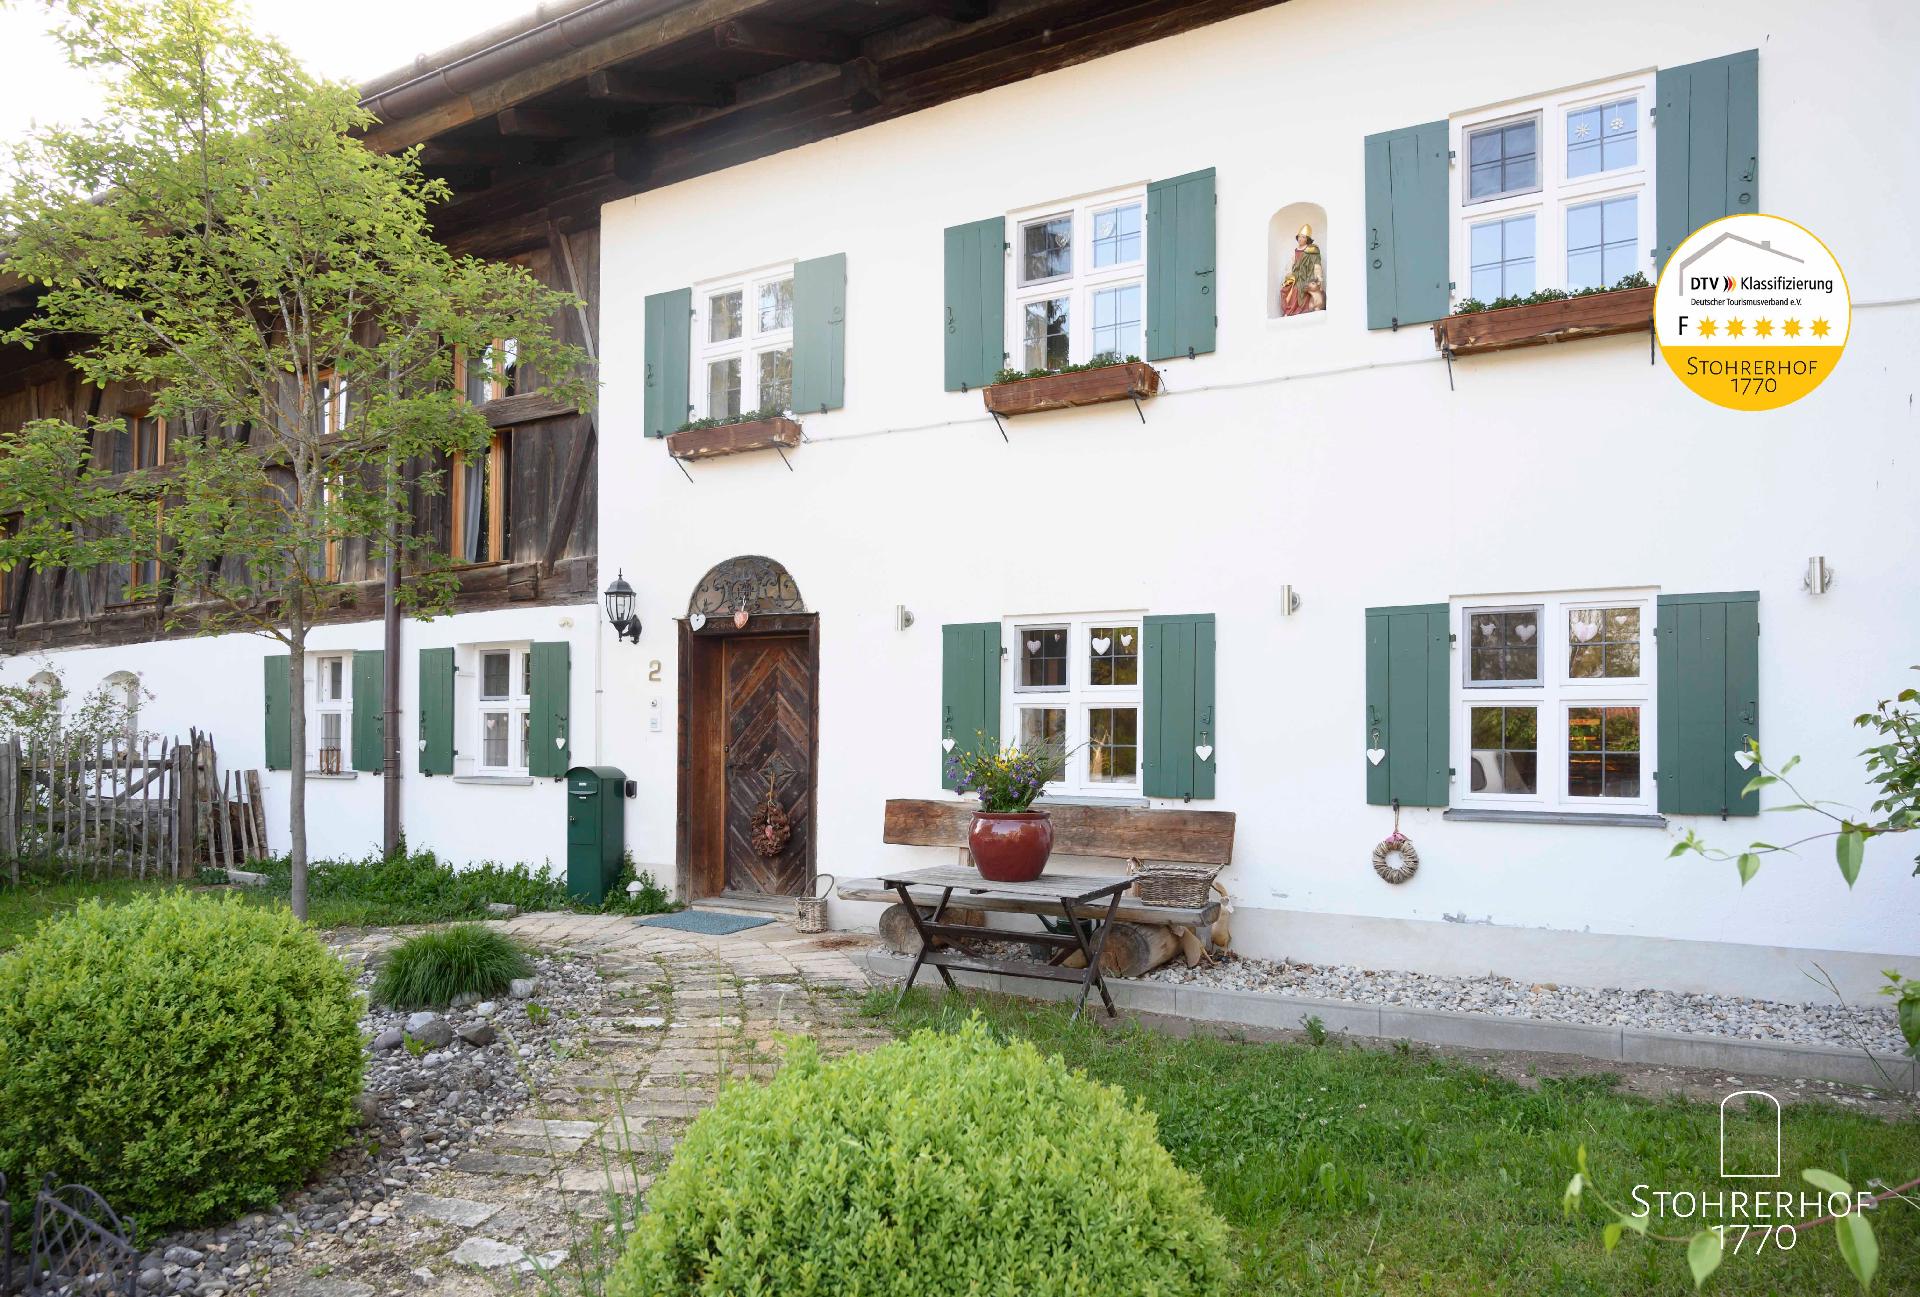 Wunderschönes Ferienhaus in Riederau mit Offe Besondere Immobilie 